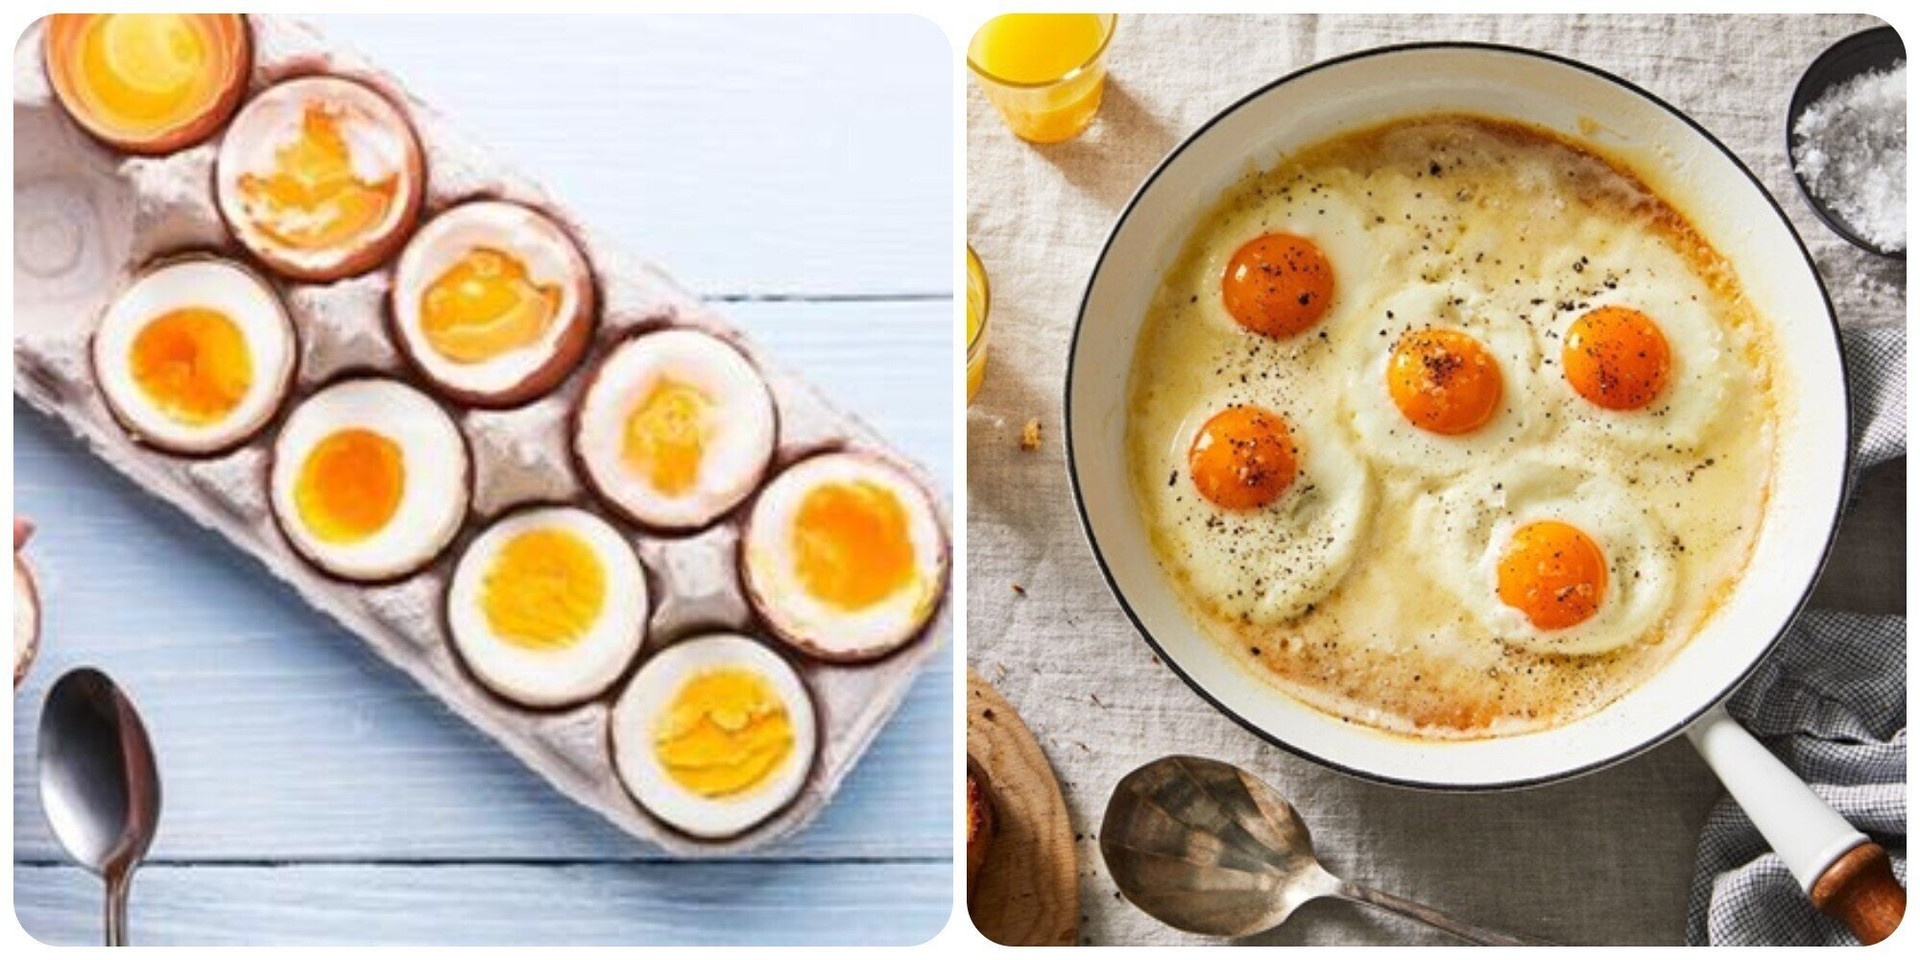 Ăn trứng gà vào buổi sáng rất tốt cho sức khoẻ.